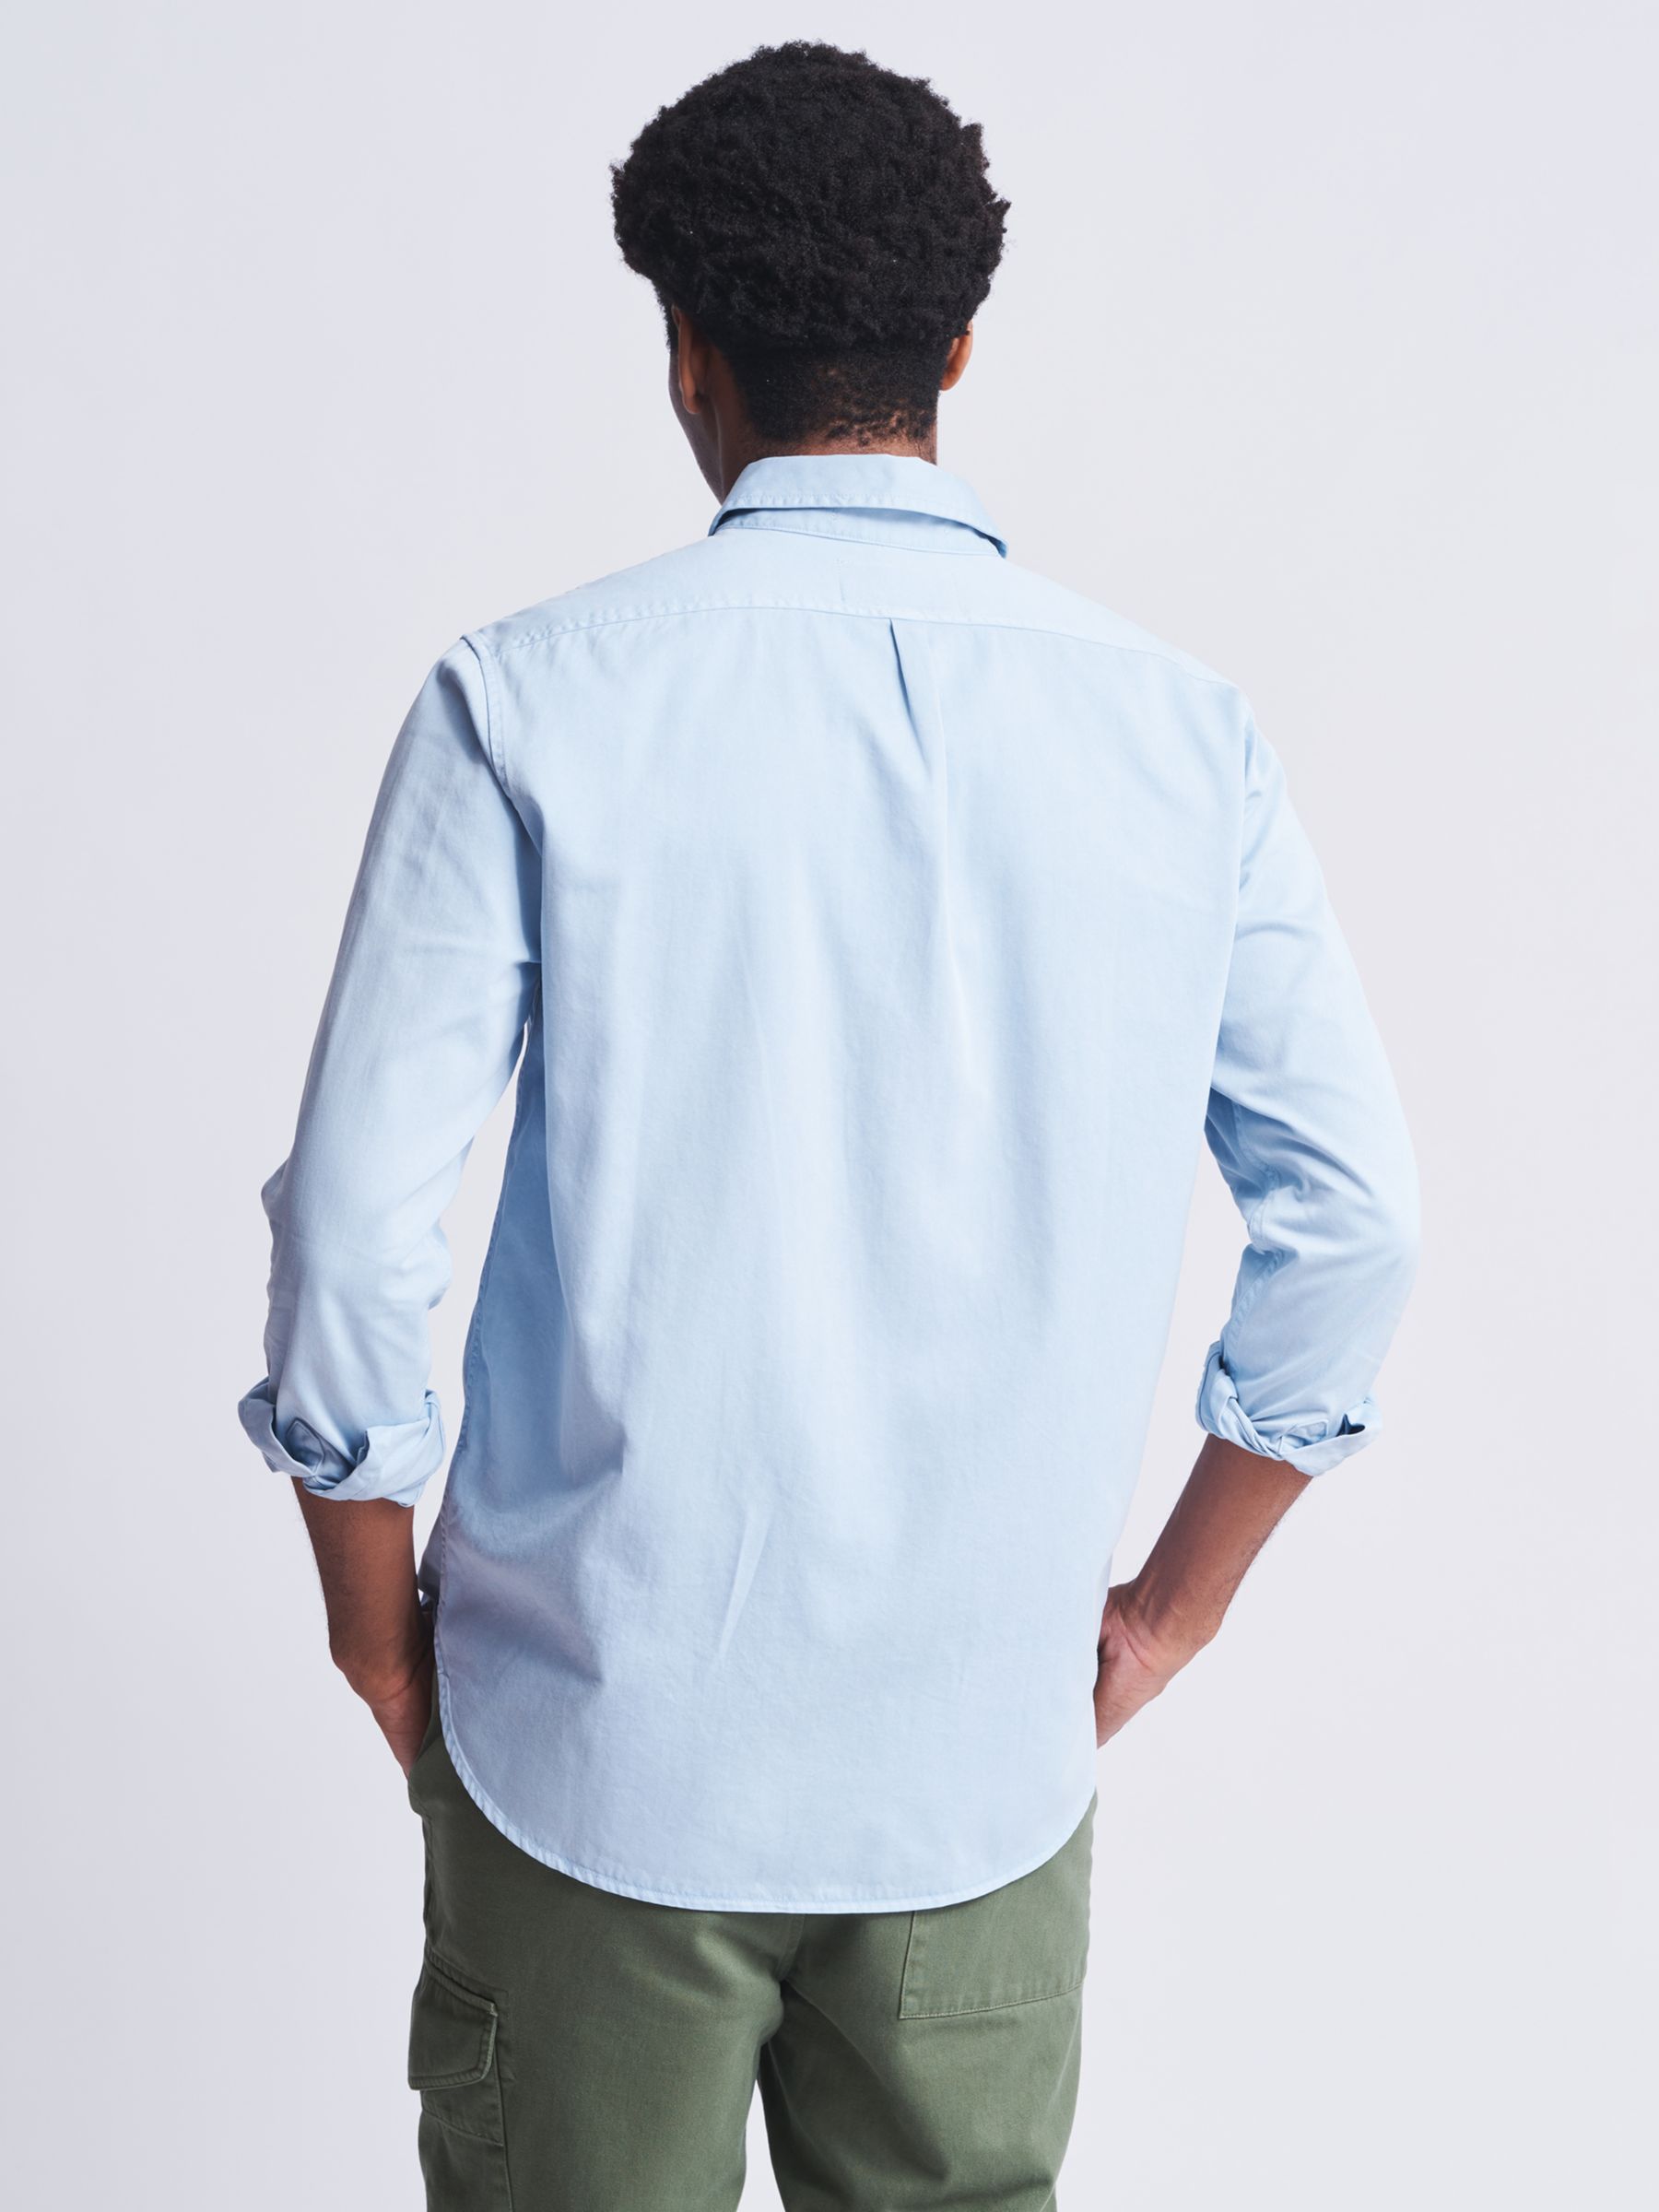 Aubin Hessle Garment Dyed Cotton Shirt, Pale Blue, S